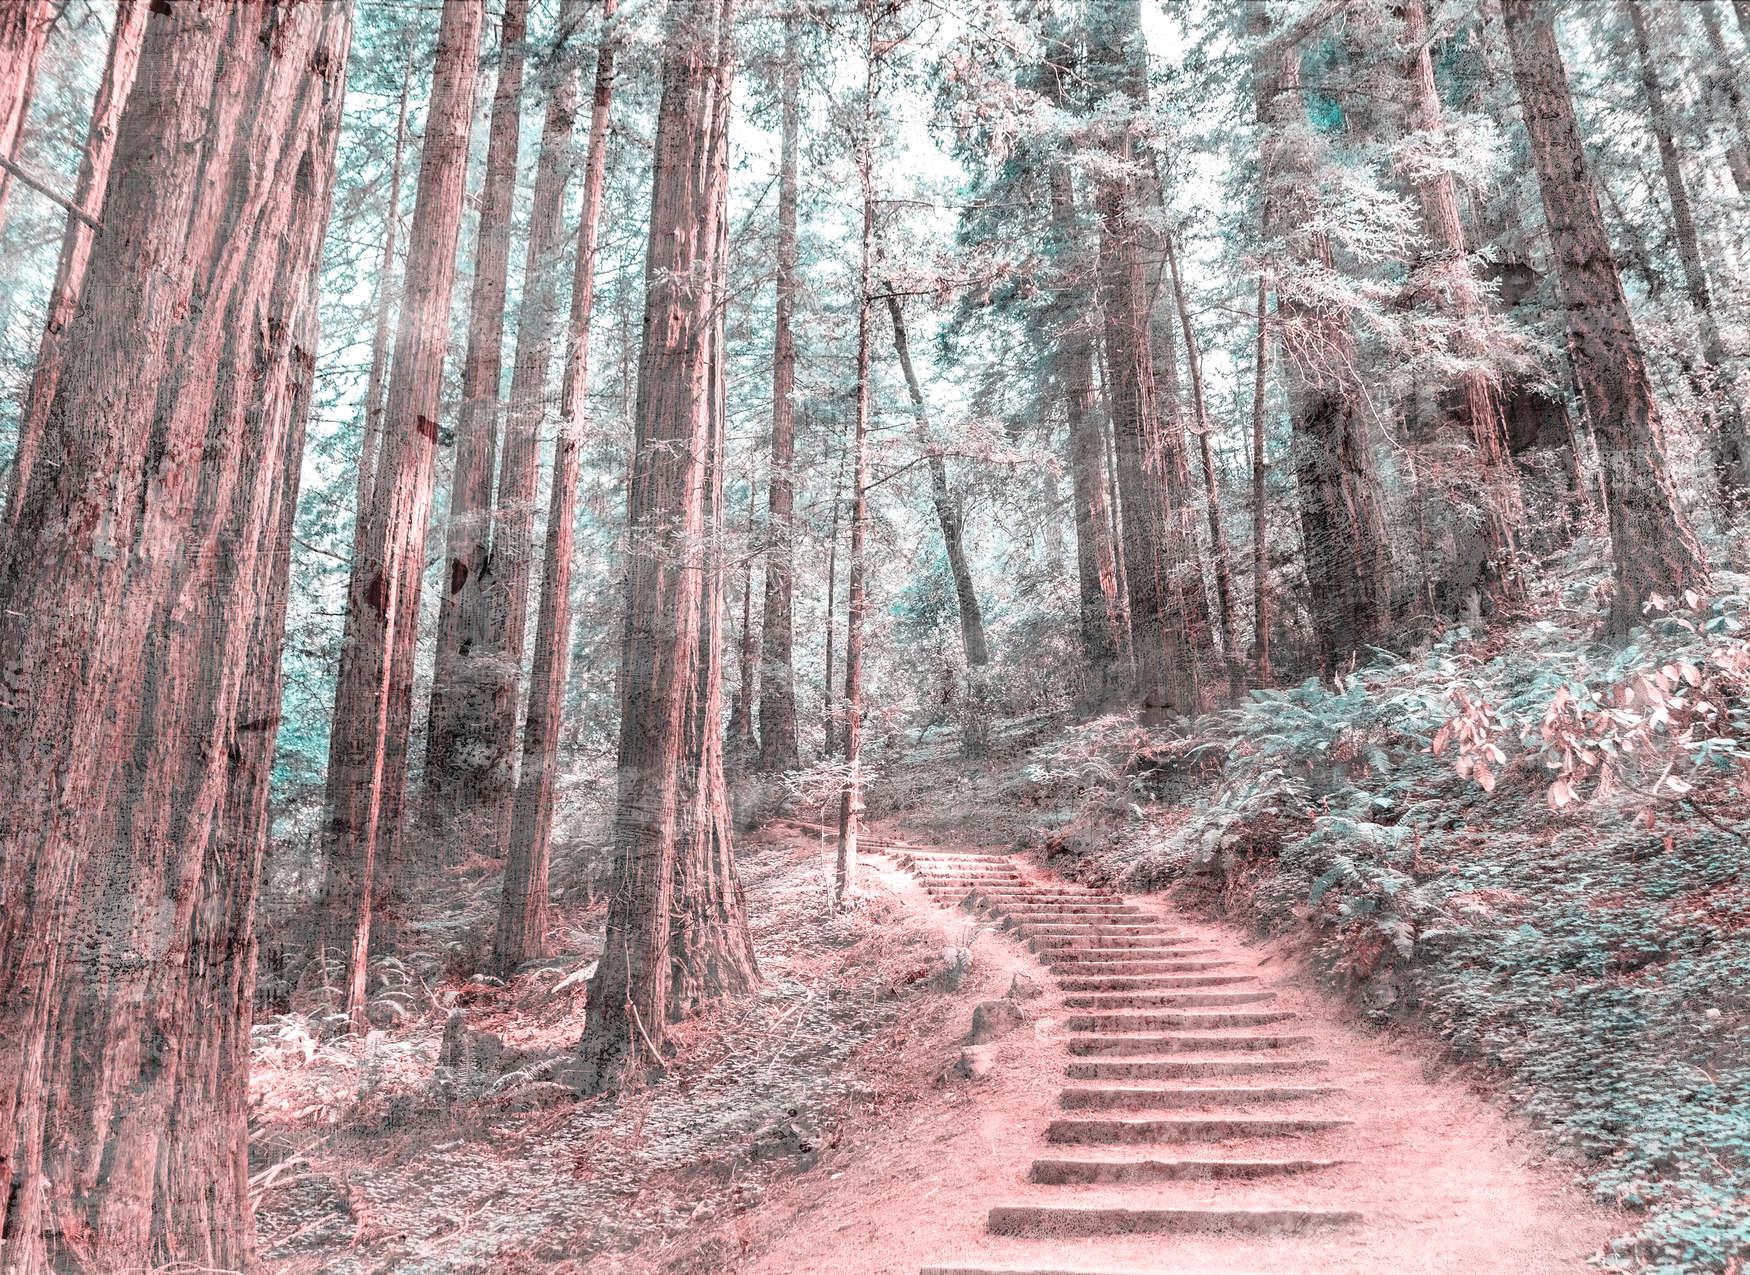             Escalier en bois à travers la forêt - Brun, Vert, Blanc
        